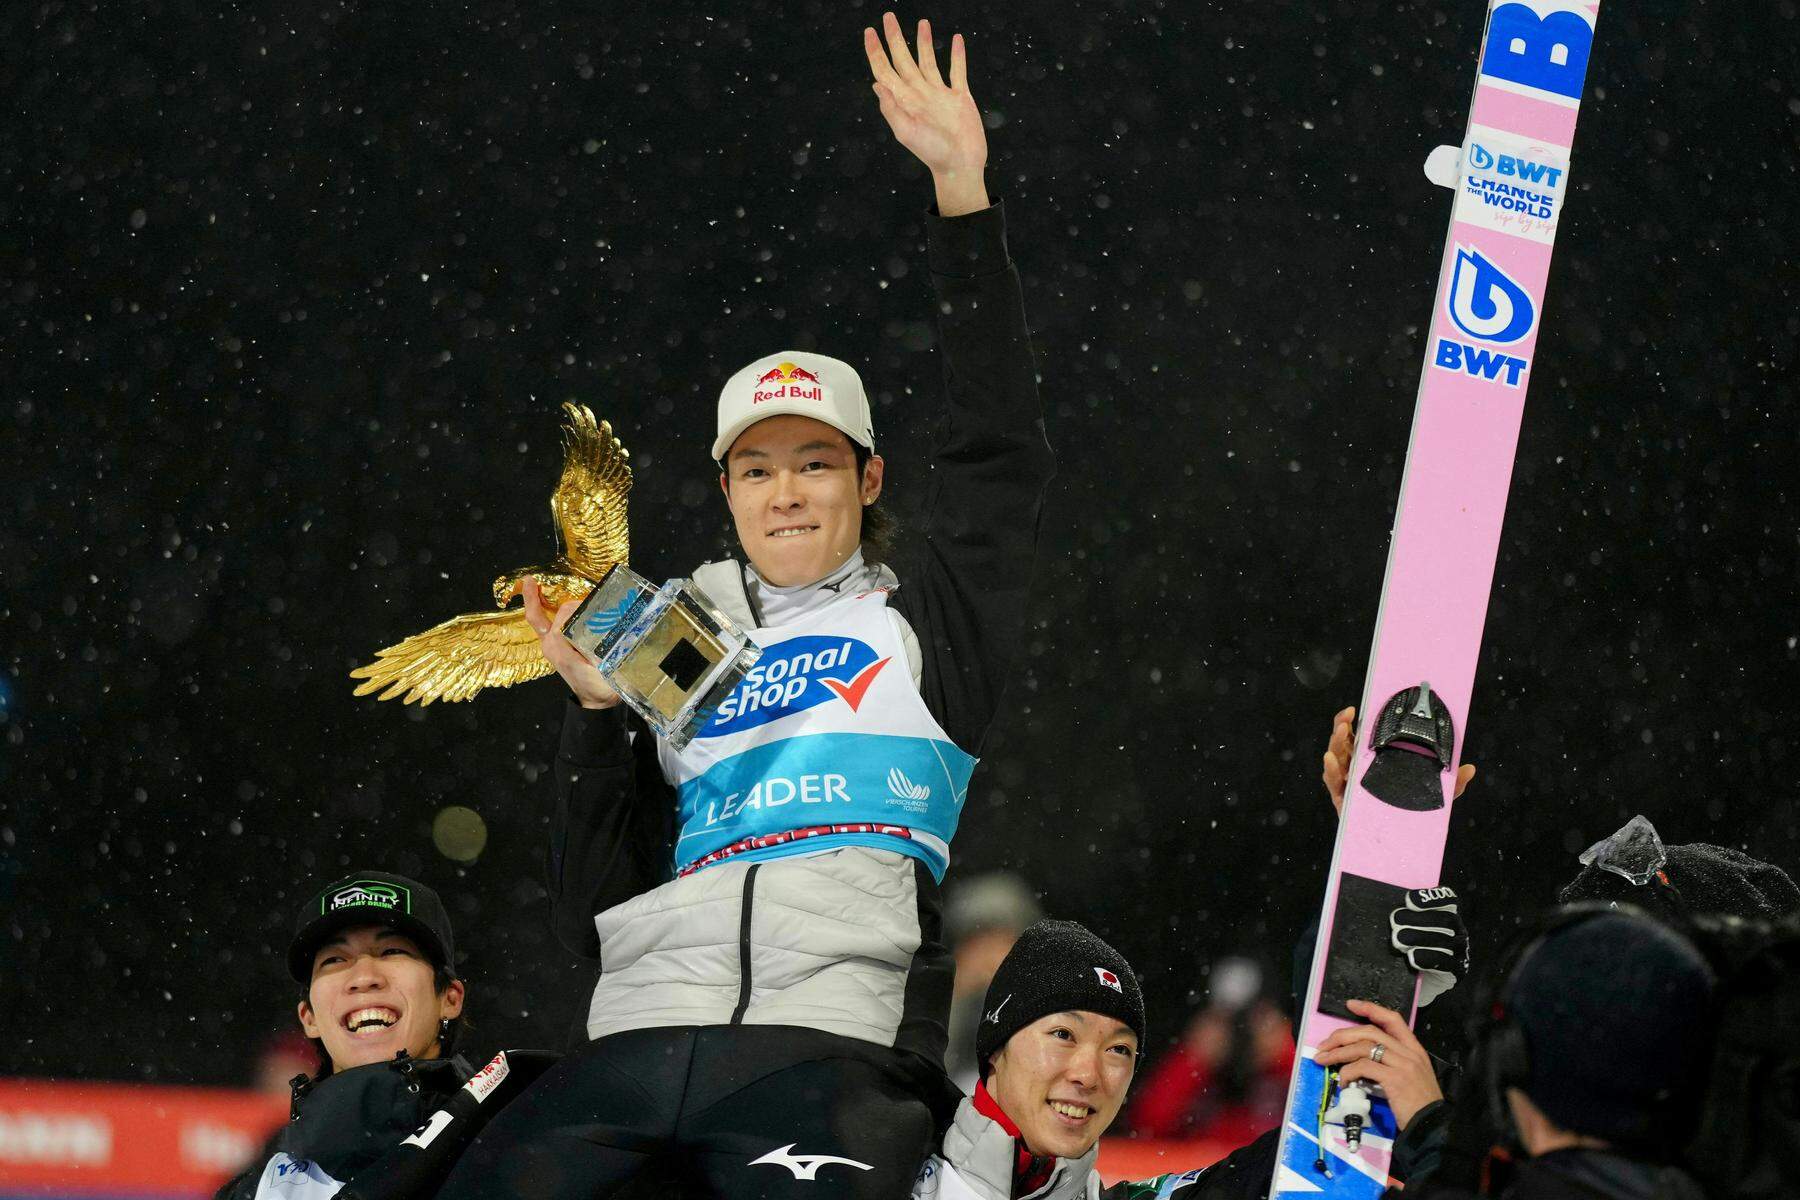 Skispringen | Kraft triumphiert in Bischofshofen, Kobayashi holt zum dritten Mal den Gesamtsieg